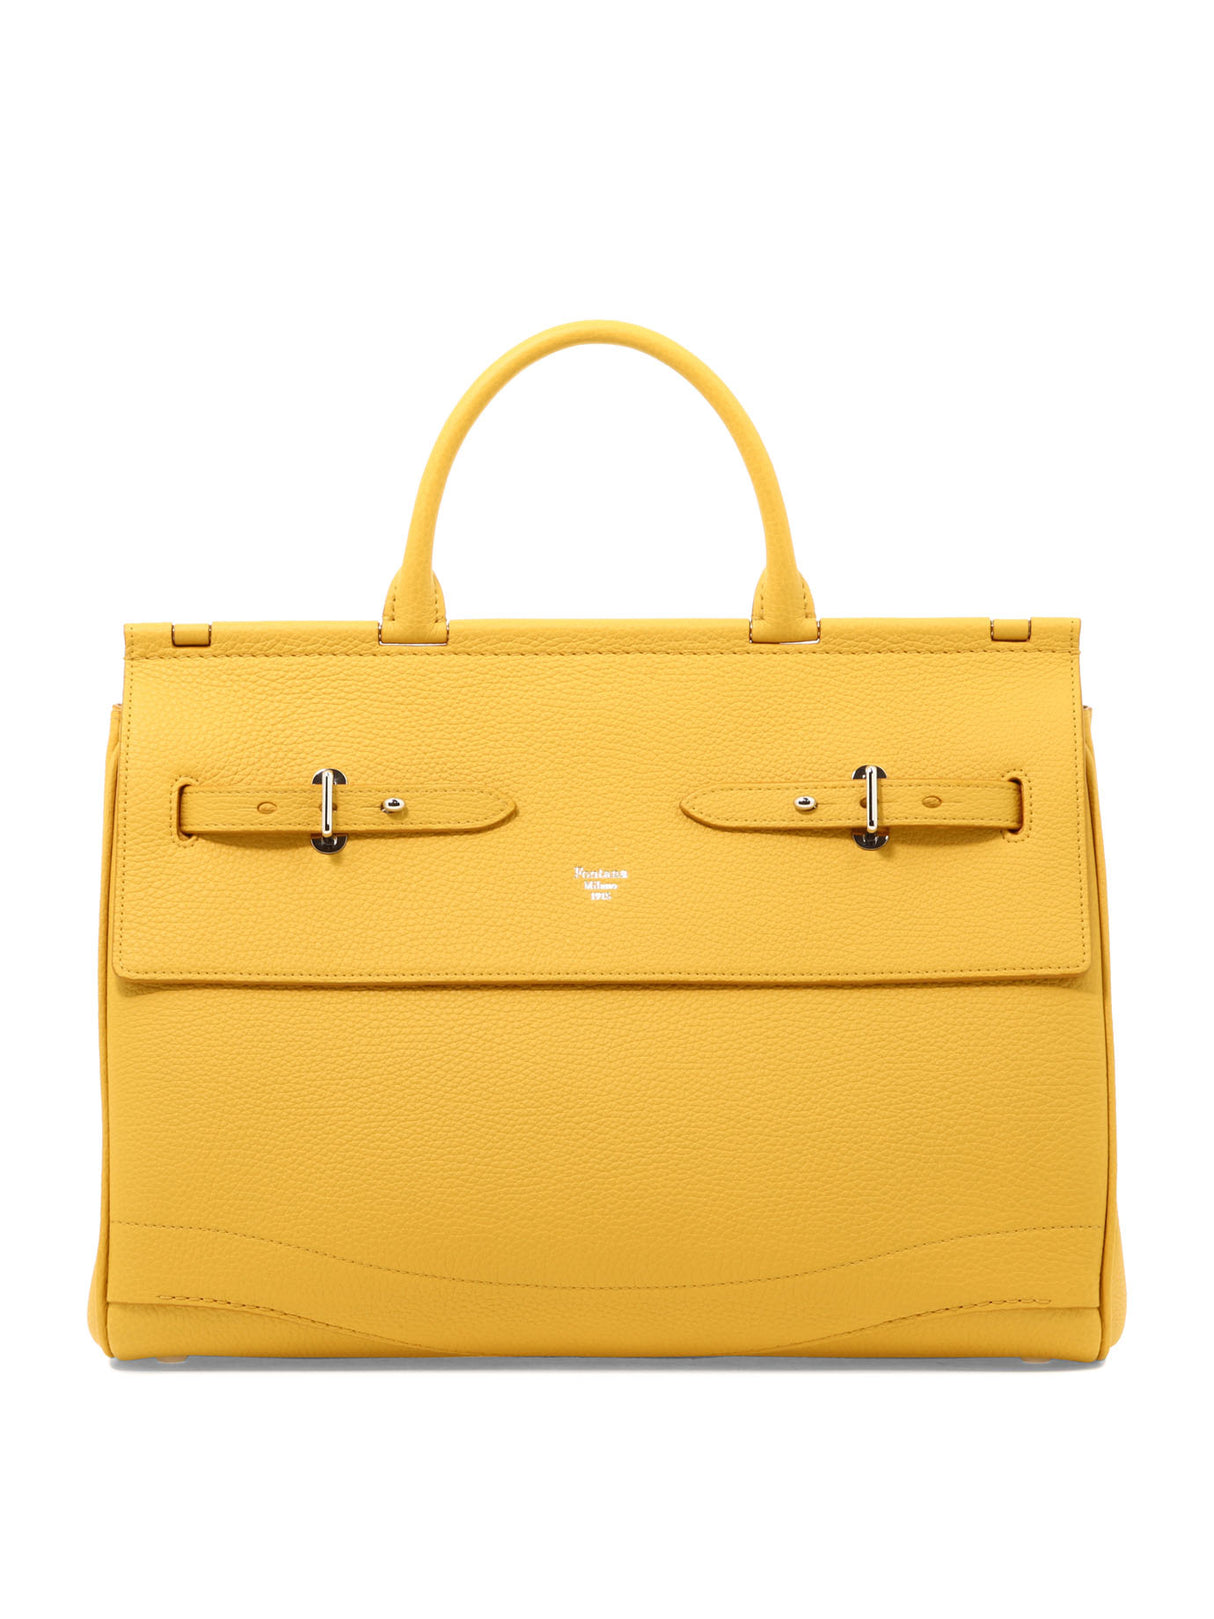 简单时尚的黄色女款手提袋